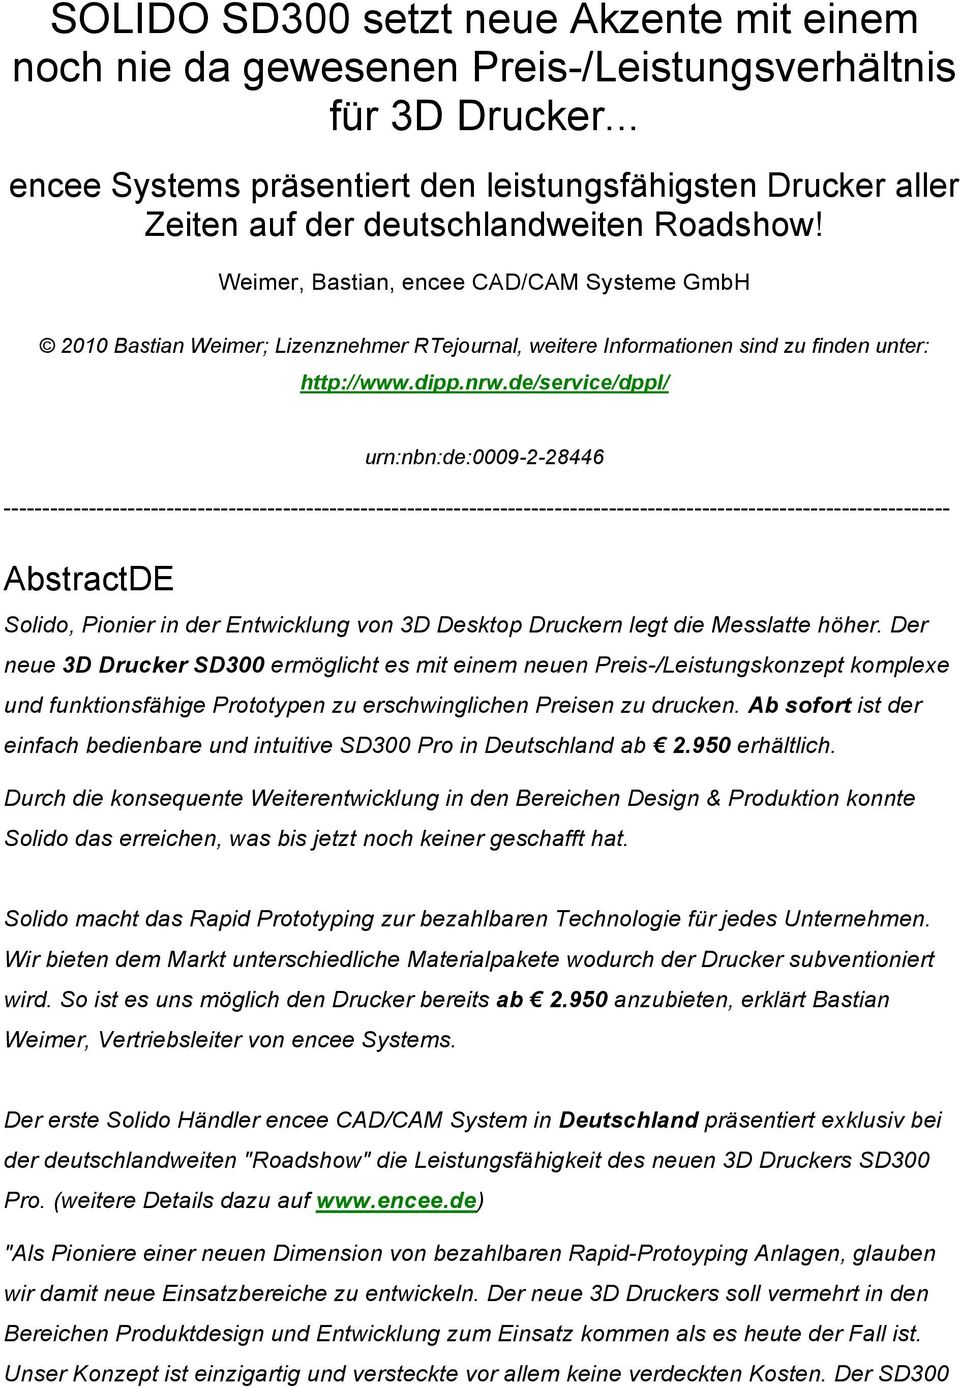 Weimer, Bastian, encee CAD/CAM Systeme GmbH 2010 Bastian Weimer; Lizenznehmer RTejournal, weitere Informationen sind zu finden unter: http://www.dipp.nrw.